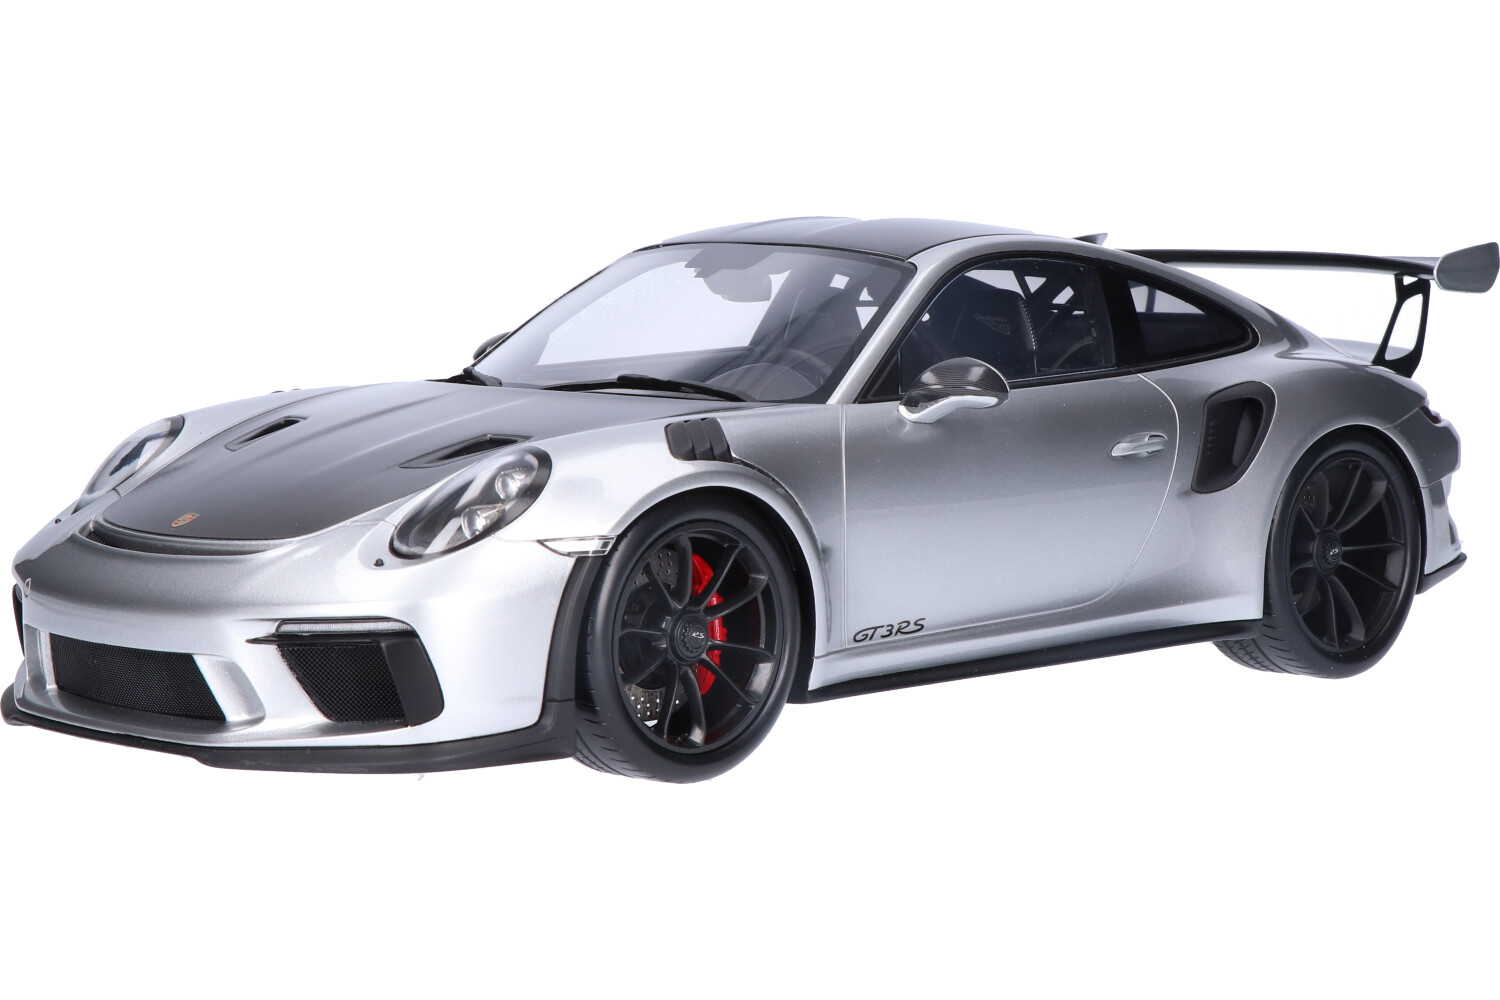 Porsche-911-GT3-RS-Weissach-Package-12S024_13159580006330246Porsche-911-GT3-RS-Weissach-Package-12S024_Houseofmodelcars_.jpg